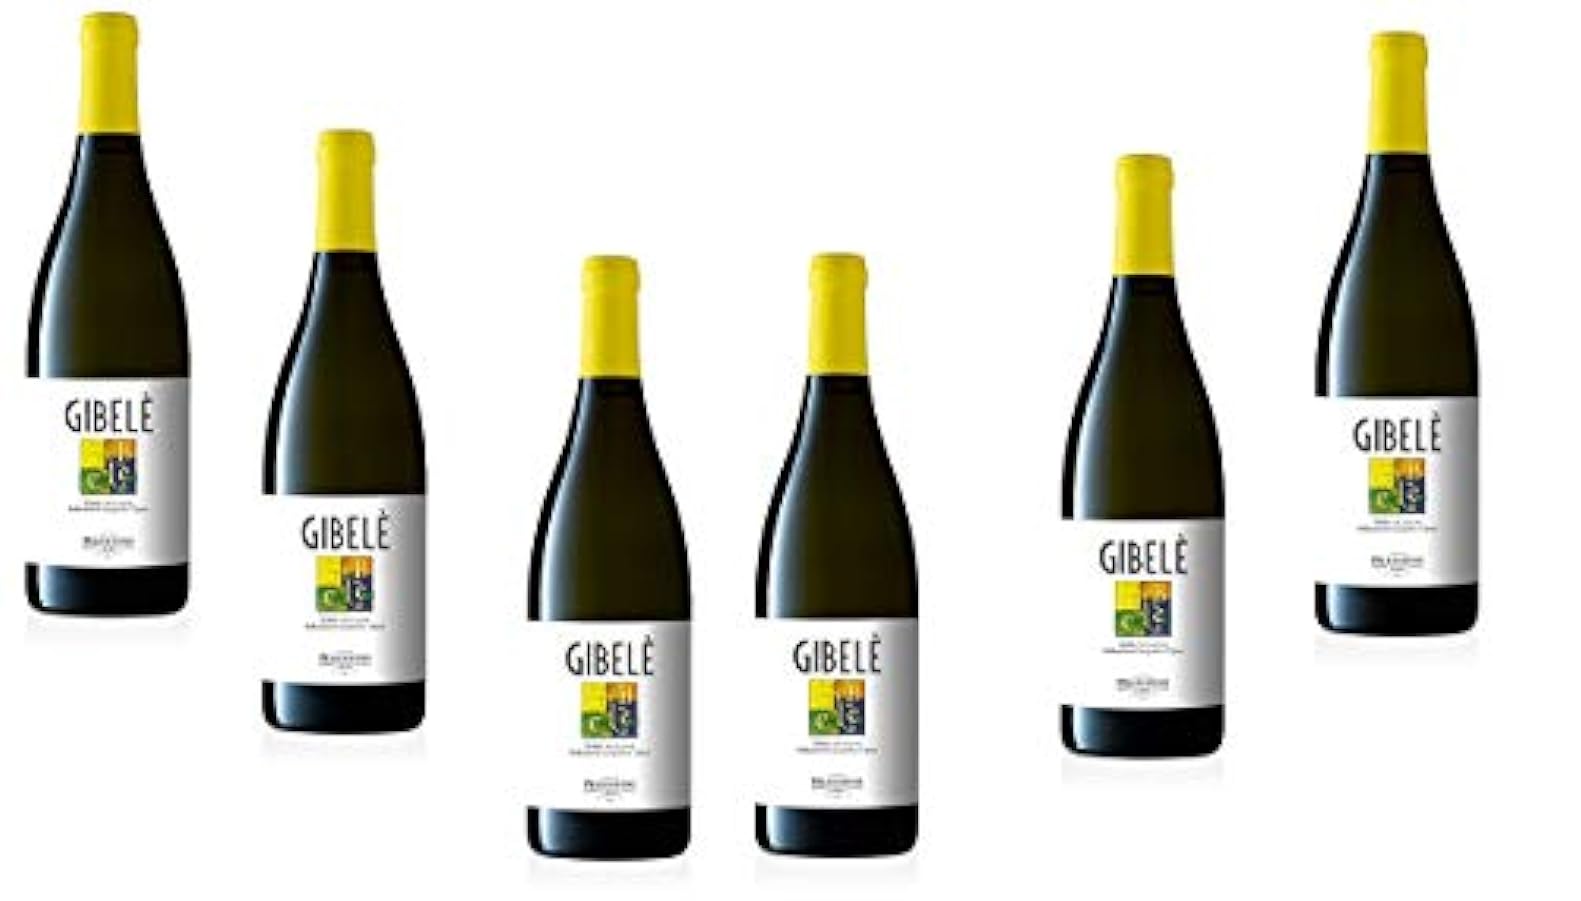 Sicilia Bedda - Terre Siciliane IGT Zibibbo Secco Gibelè Pellegrino 2019 - Confezione 6 Bottiglie di Vino Zibibbo Pellegrino 714764814